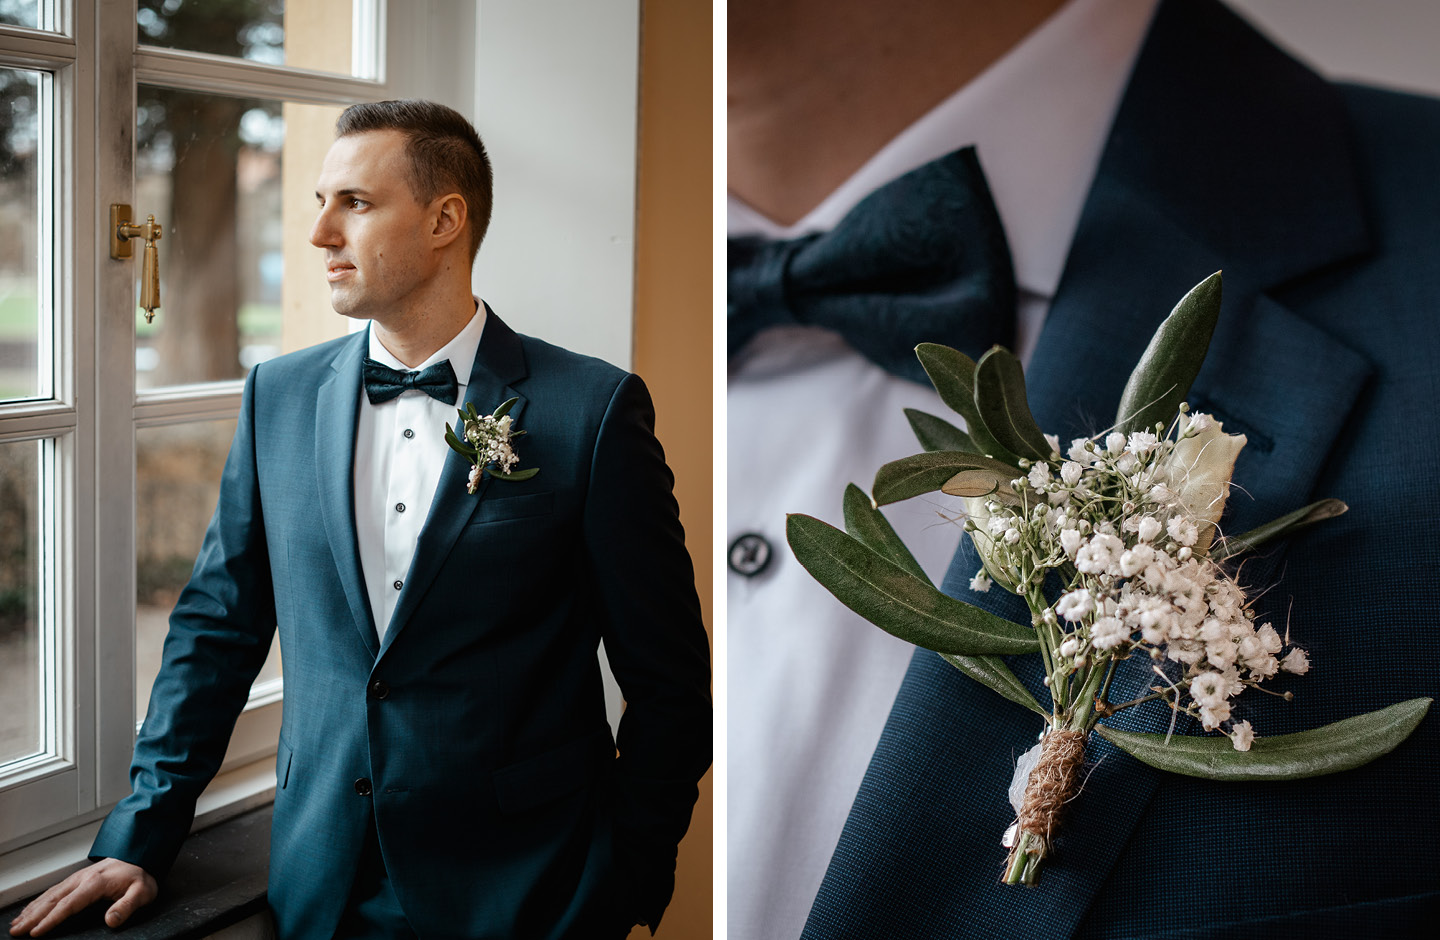 Der Bräutigam steht in einem dunkelblauen Anzug am Fenster. Die Ansteckblume besteht aus weißen Blümchen.